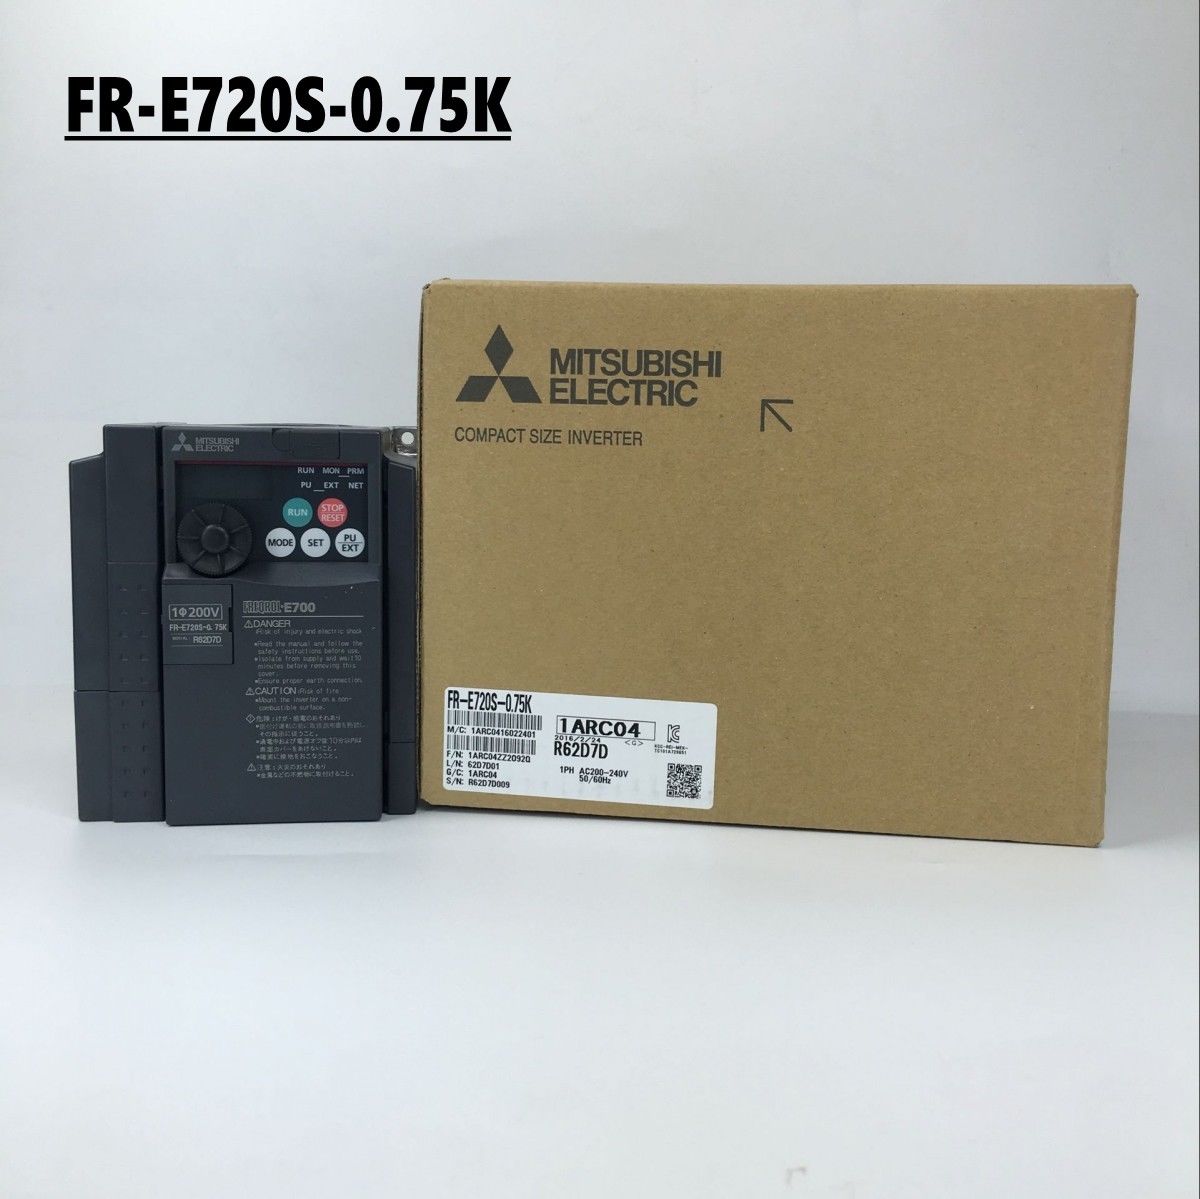 Brand New MITSUBISHI inverter FR-E720S-0.75K In Box FRE720S0.75K